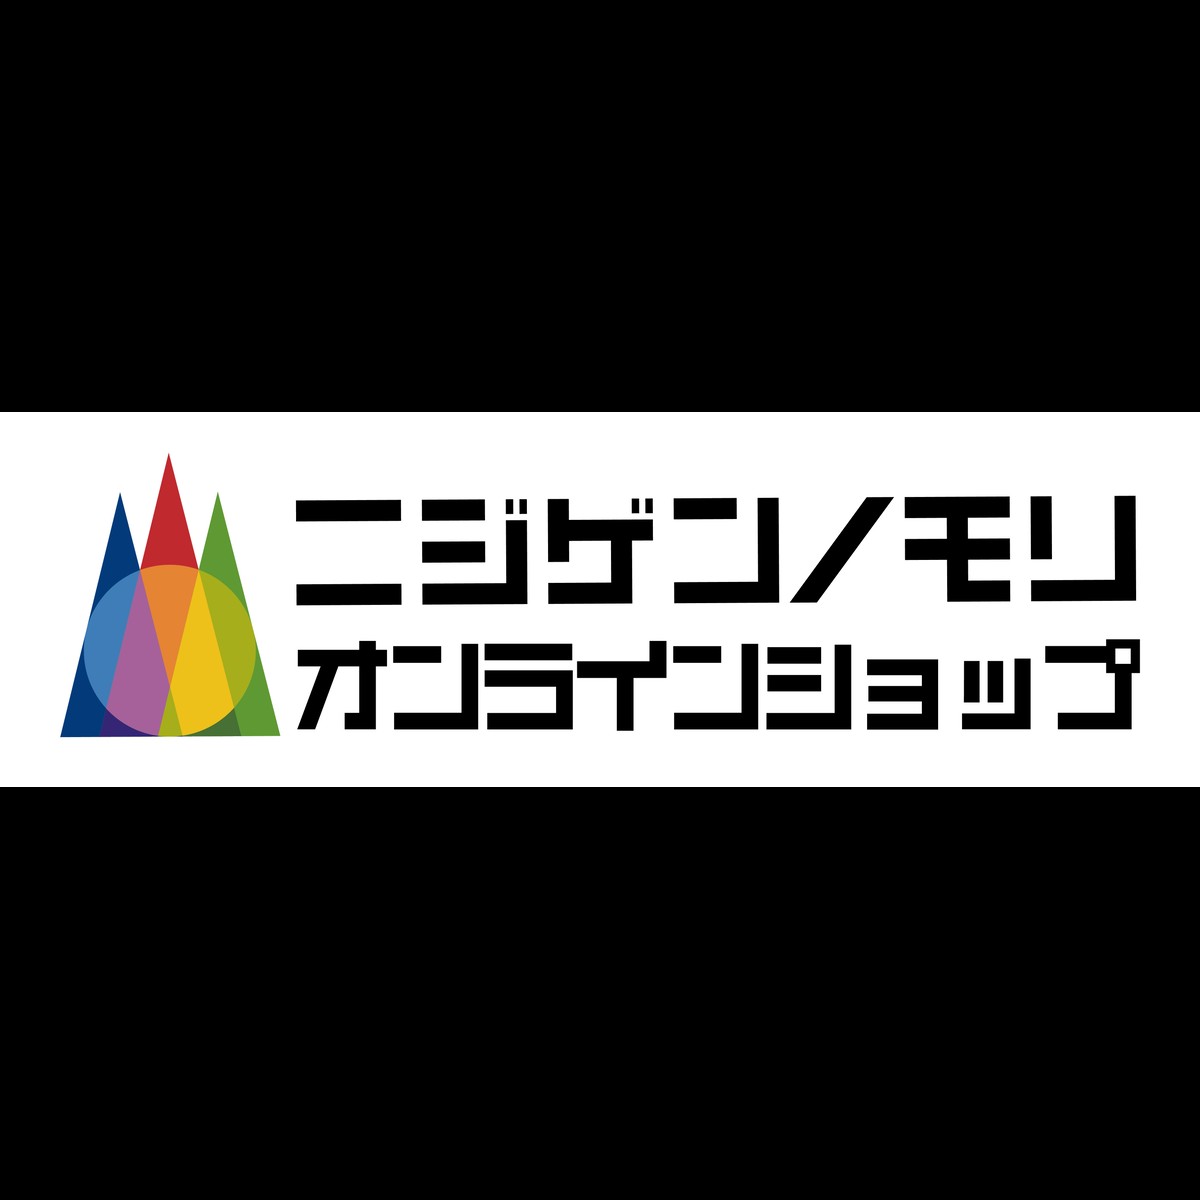 クレヨンしんちゃん 文房具 ニジゲンノモリ オンラインショップ